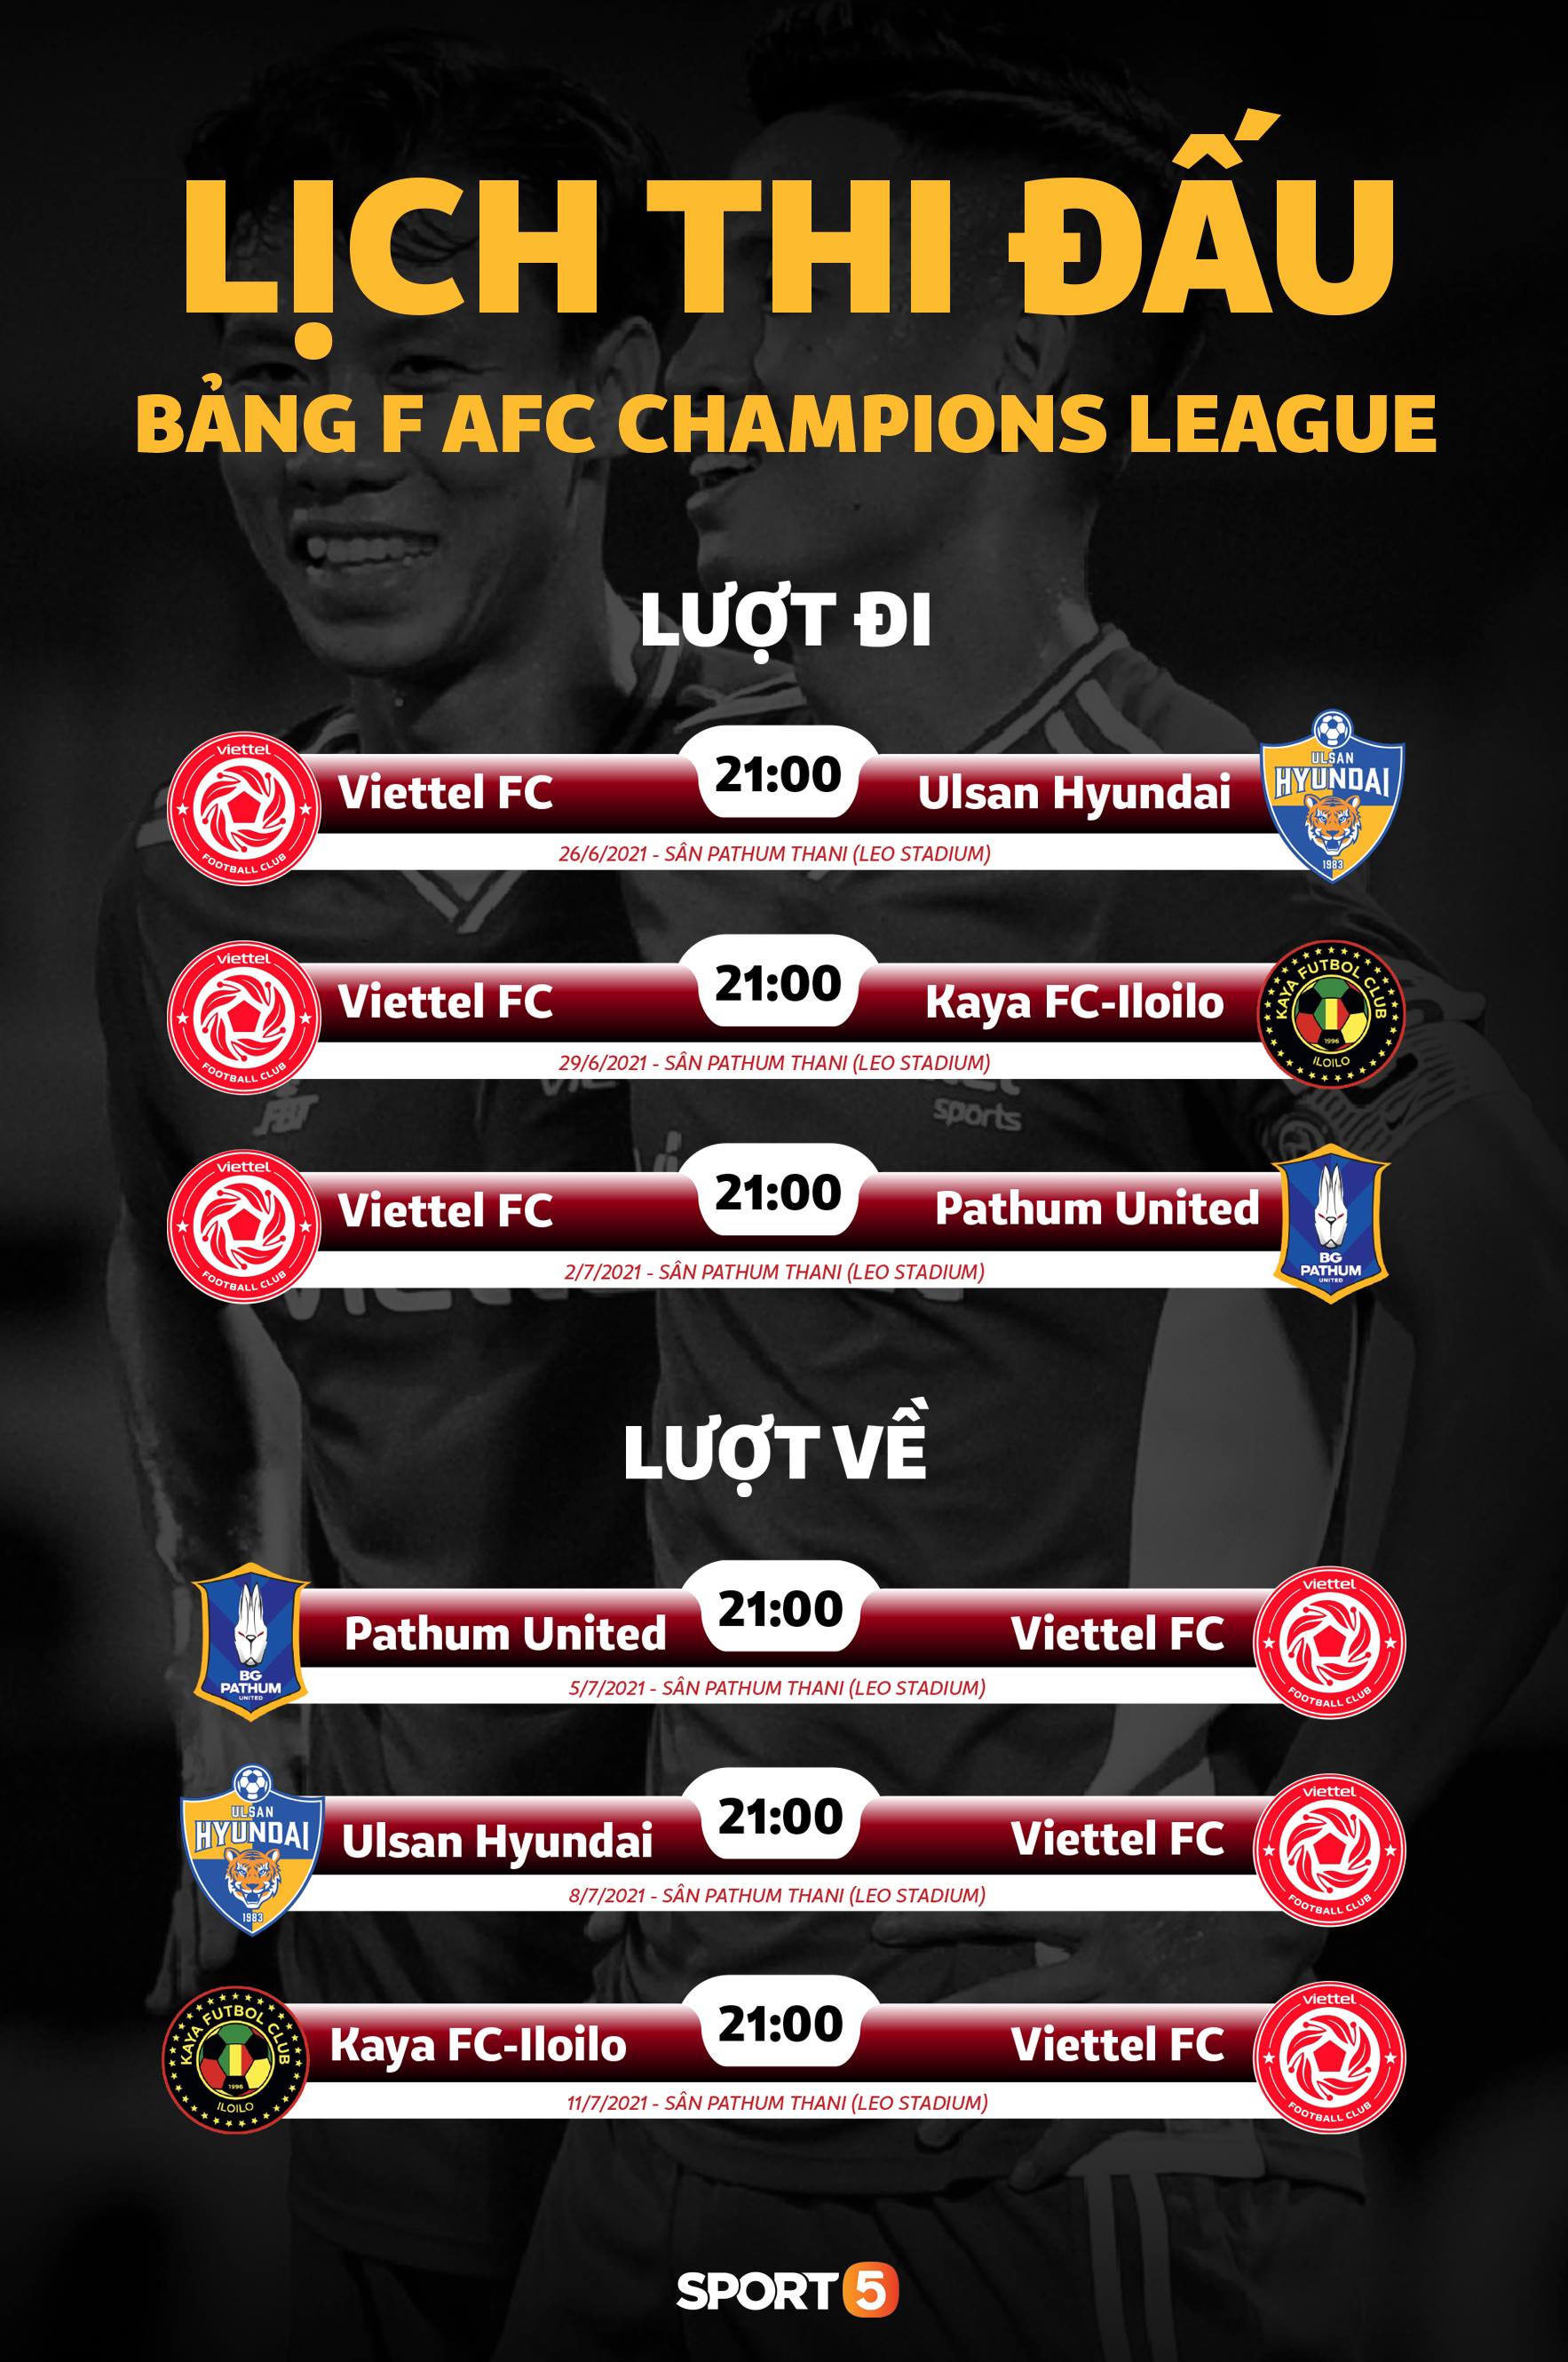 HLV Kaya FC bày tỏ sự khâm phục và lo sợ với CLB Viettel trước trận đấu của hai đội tại AFC Champions League 2021 - Ảnh 2.